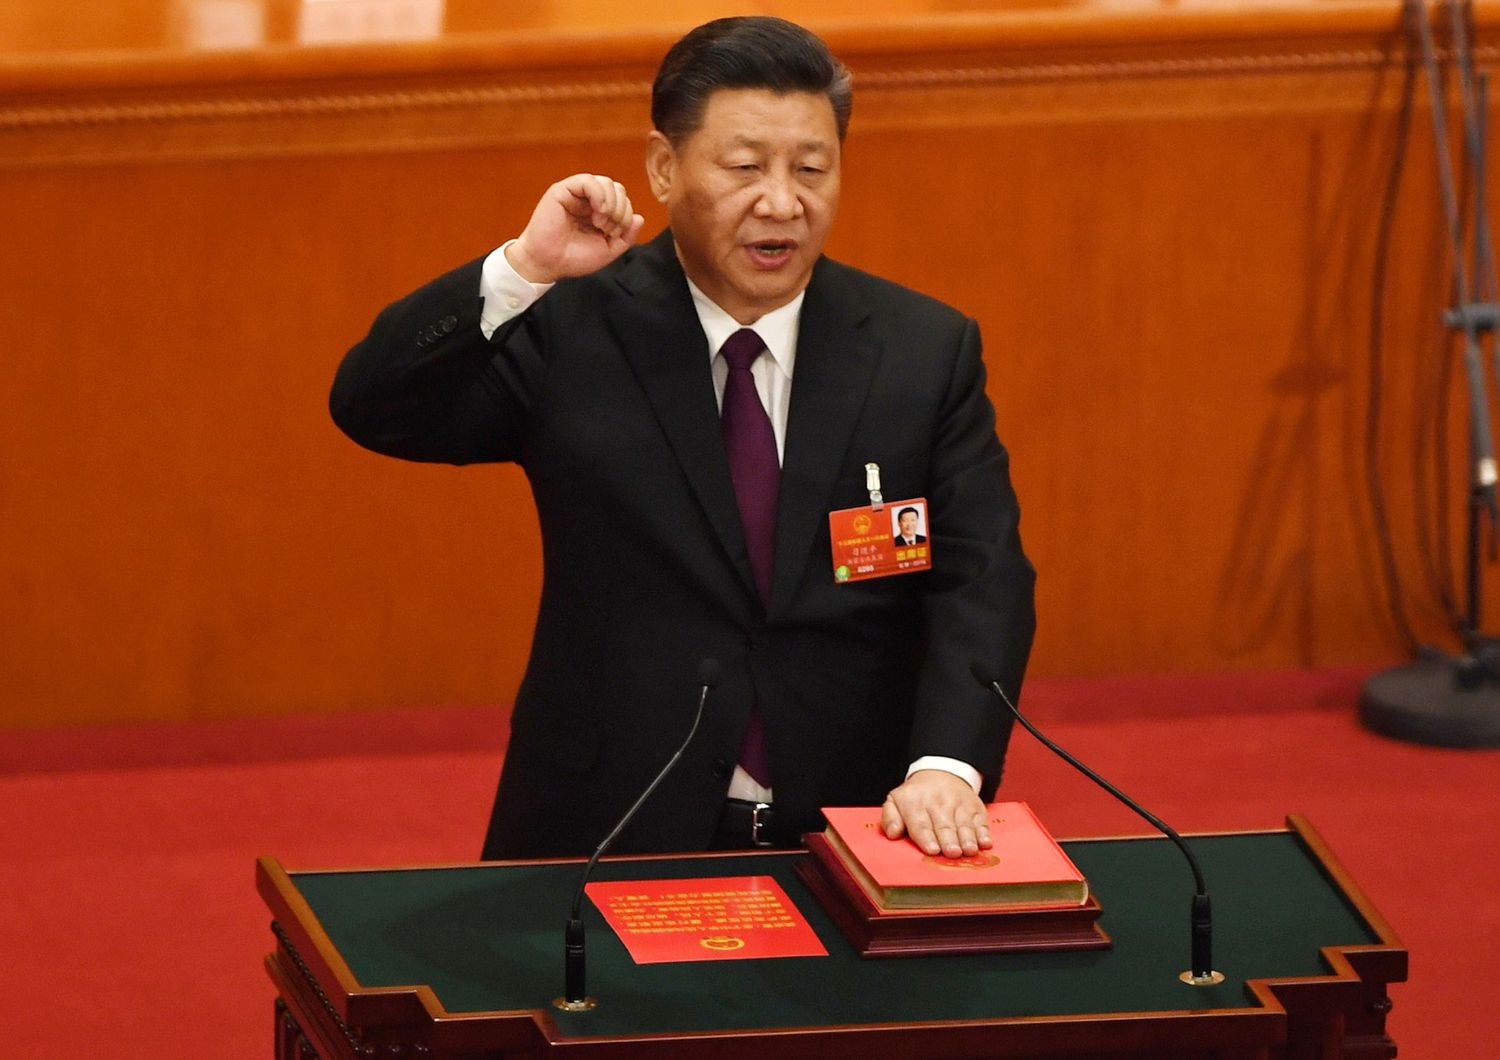 Dopo il voto dell&rsquo;Assemblea Nazionale del Popolo, Xi ha prestato giuramento sulla Costituzione cinese, prima volta in assoluto di un presidente cinese al momento dell&rsquo;elezione.&nbsp;